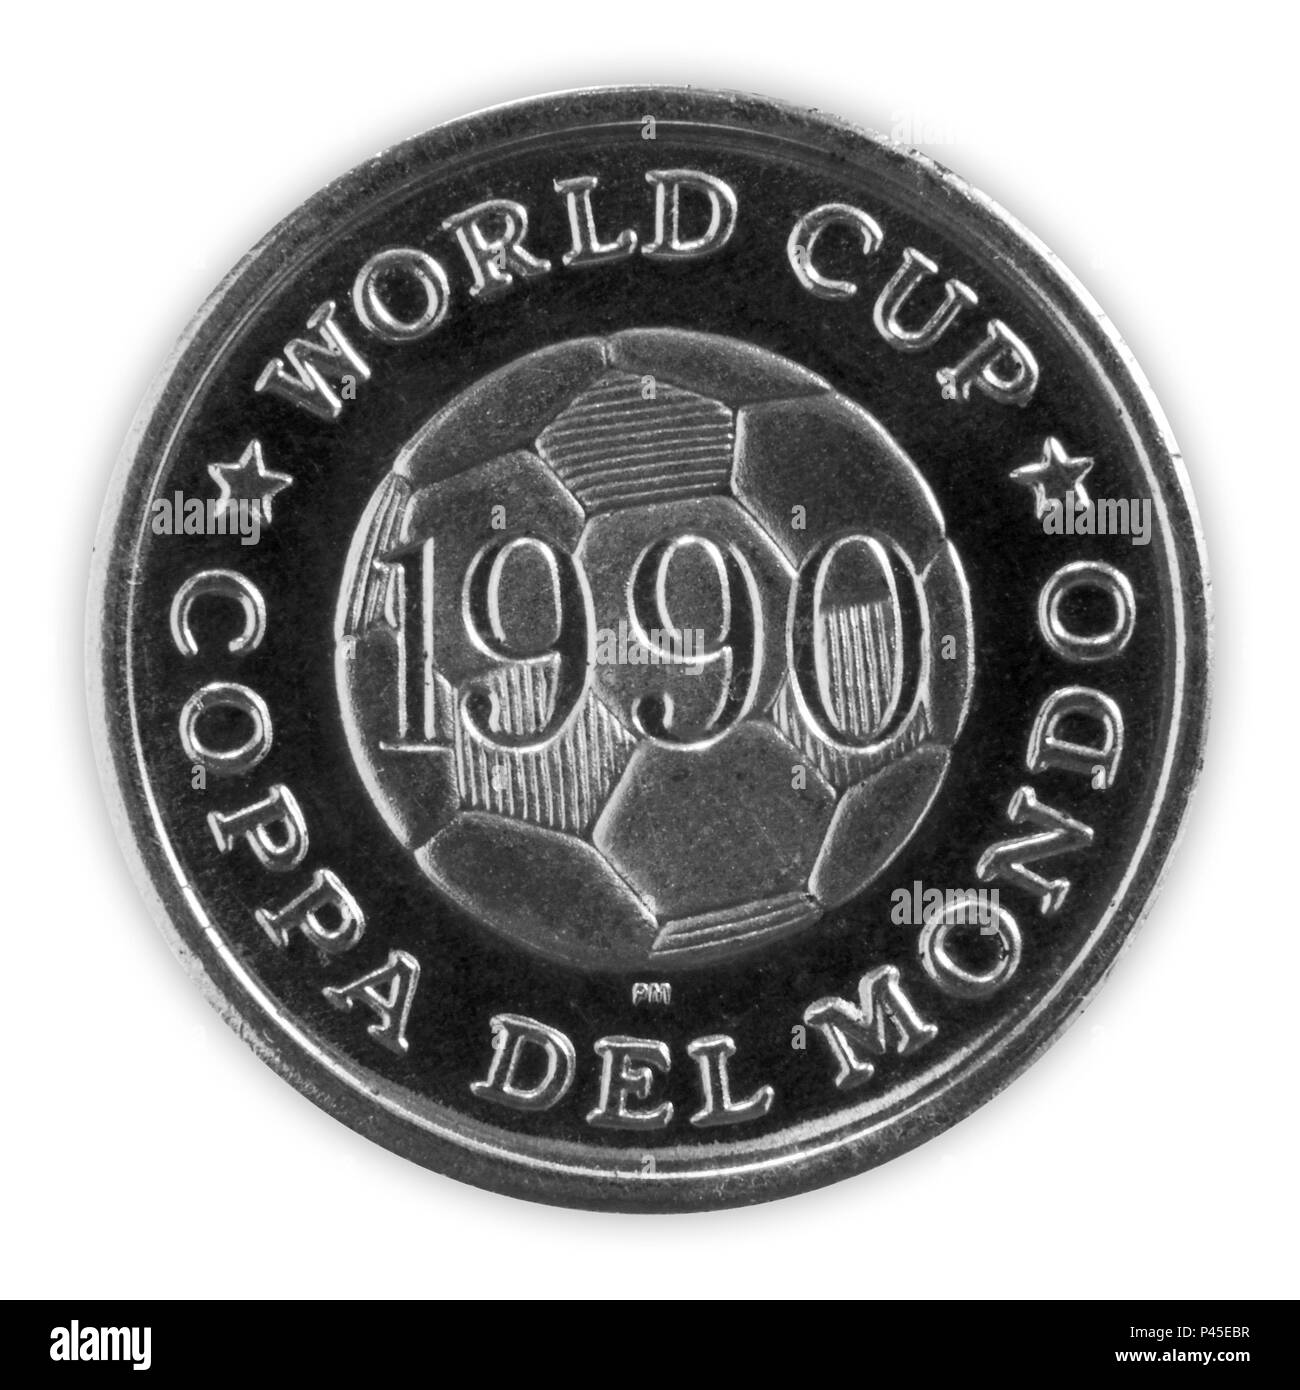 Italia - Junio 18, 2018: la Copa Mundial de la Fifa 1990 moneda conmemorativa titulado World Cup Coppa Del Mondo con una imagen de un balón de fútbol Foto de stock